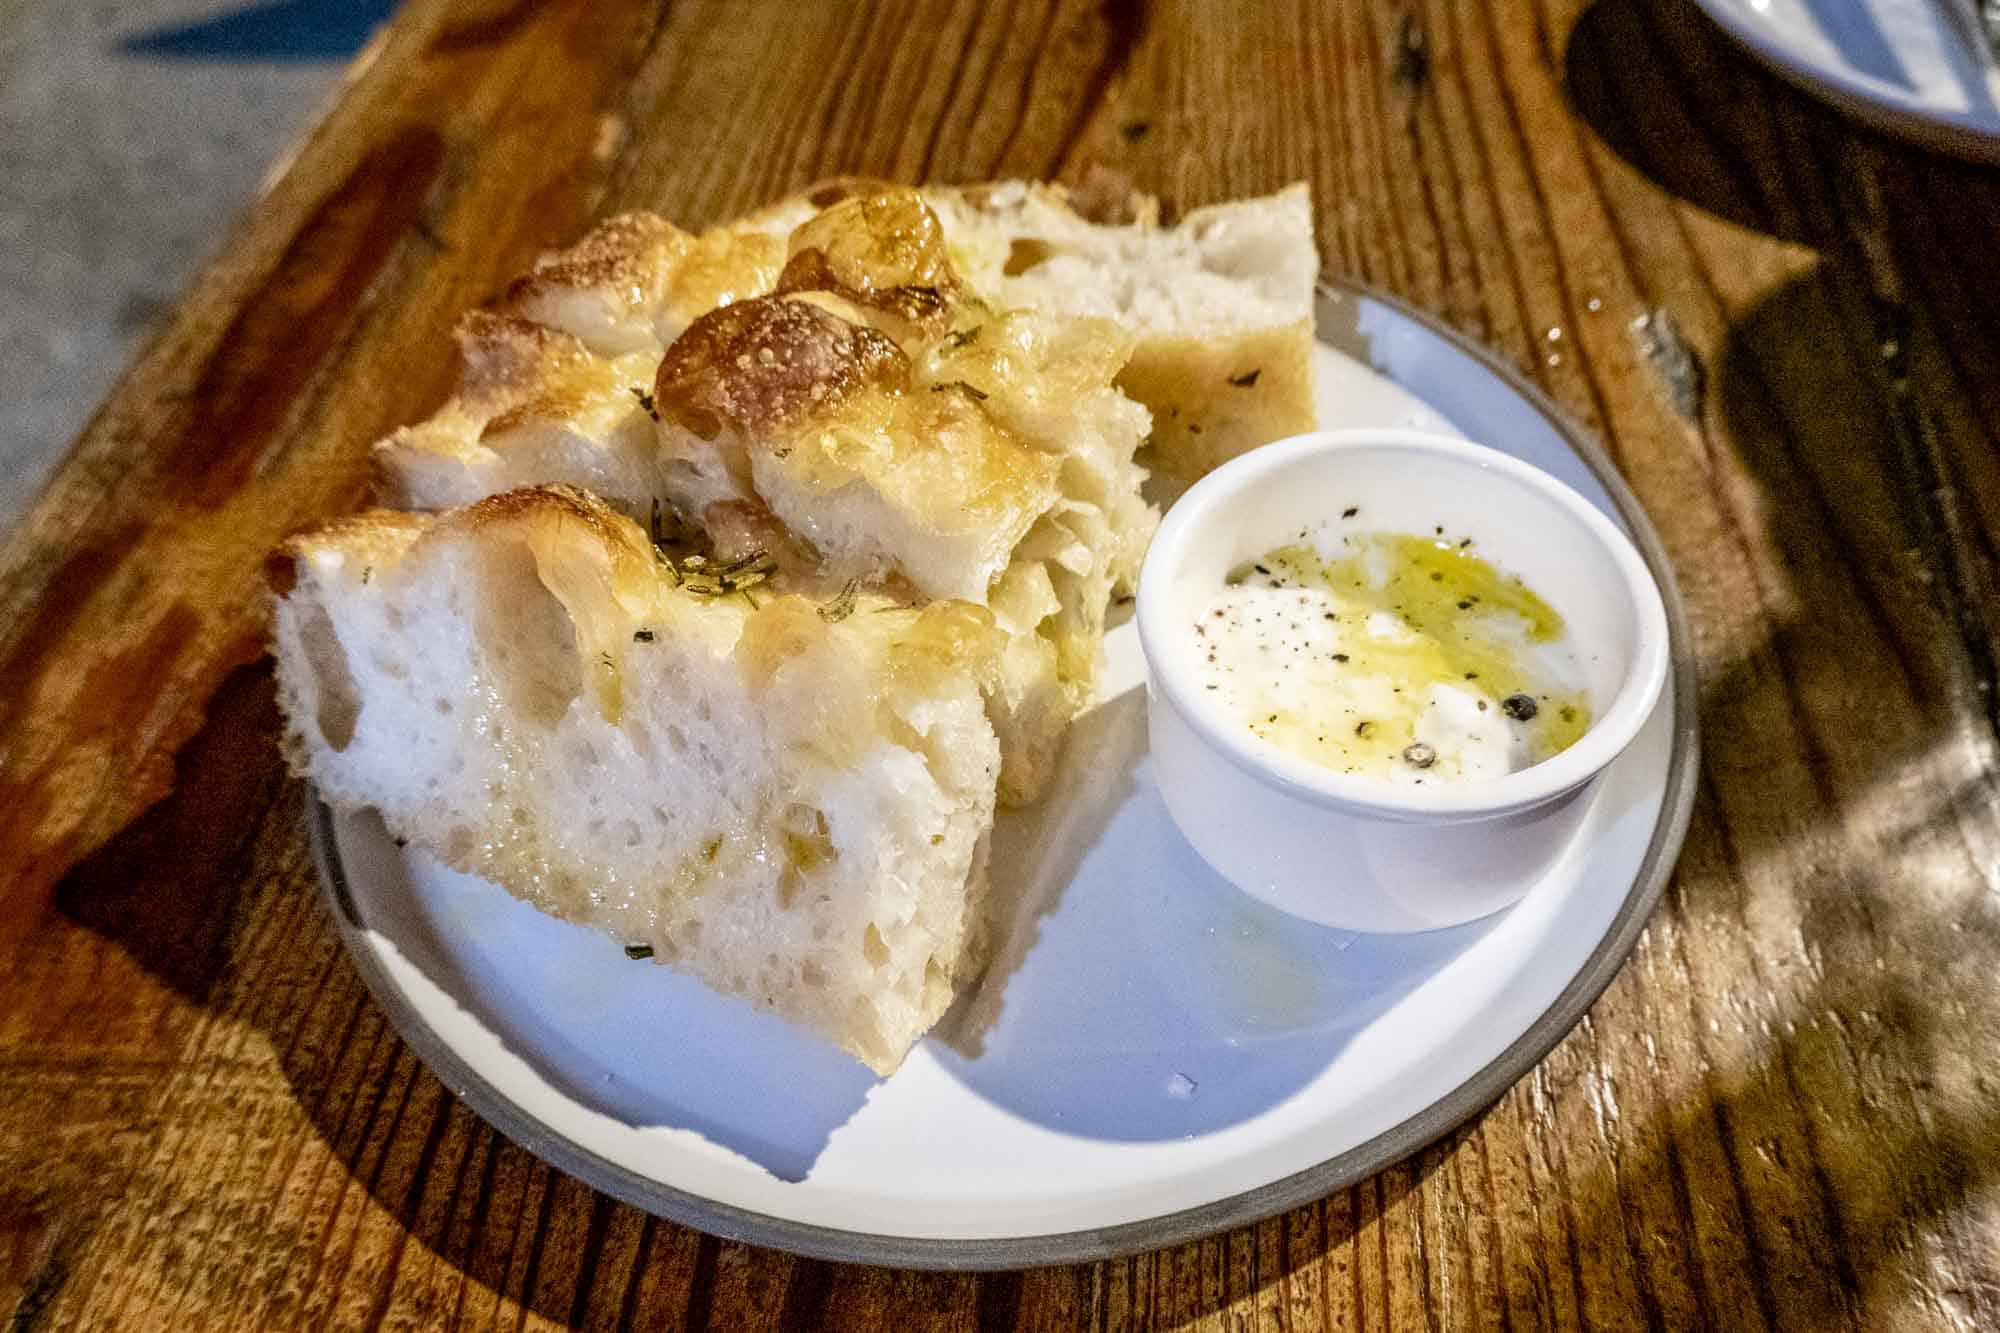 Focaccia bread with stracciatella spread on plate